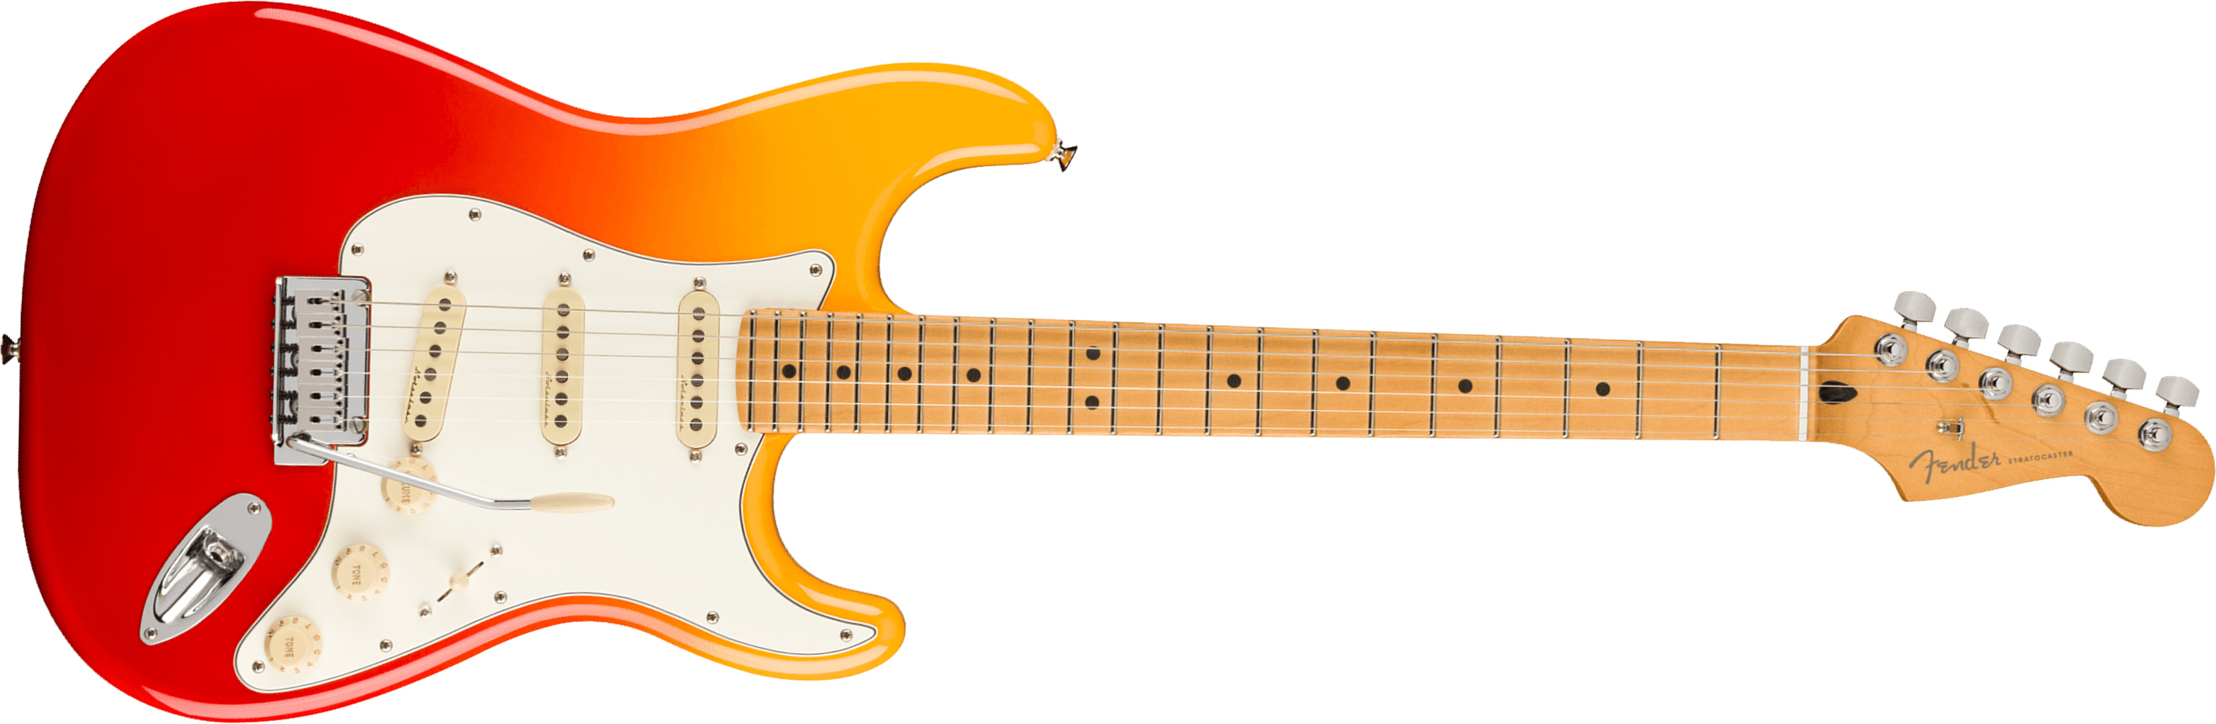 Fender Strat Player Plus Mex 3s Trem Mn - Tequila Sunrise - Guitarra eléctrica con forma de str. - Main picture